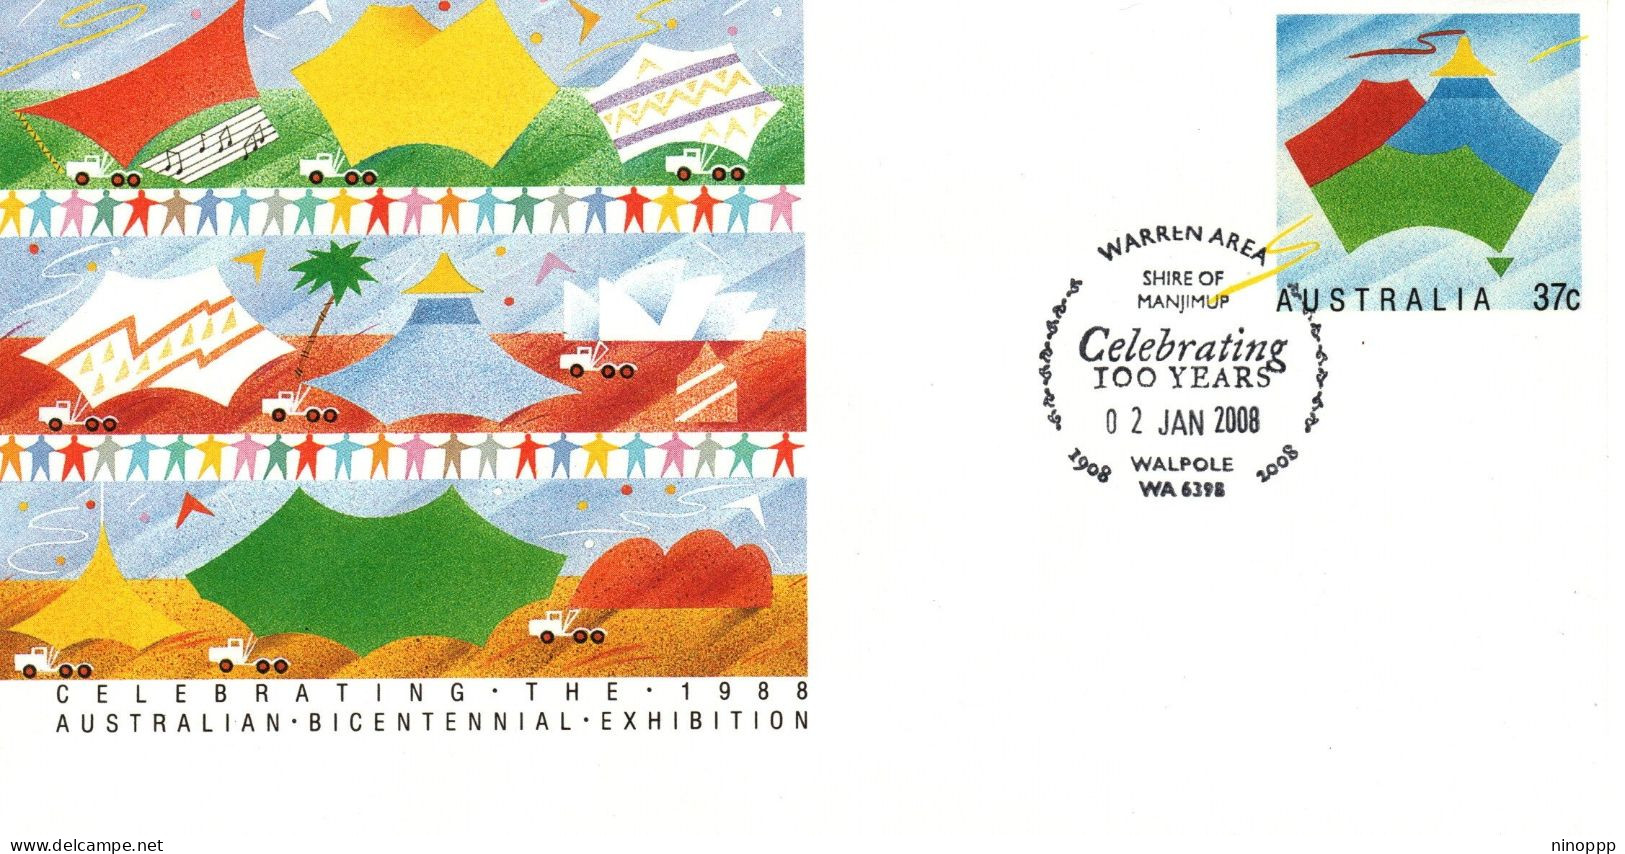 Australia 2008 ,Warren Area Celebrating 100 Years,Walpole Postmark,souvenir Cover - Marcofilia